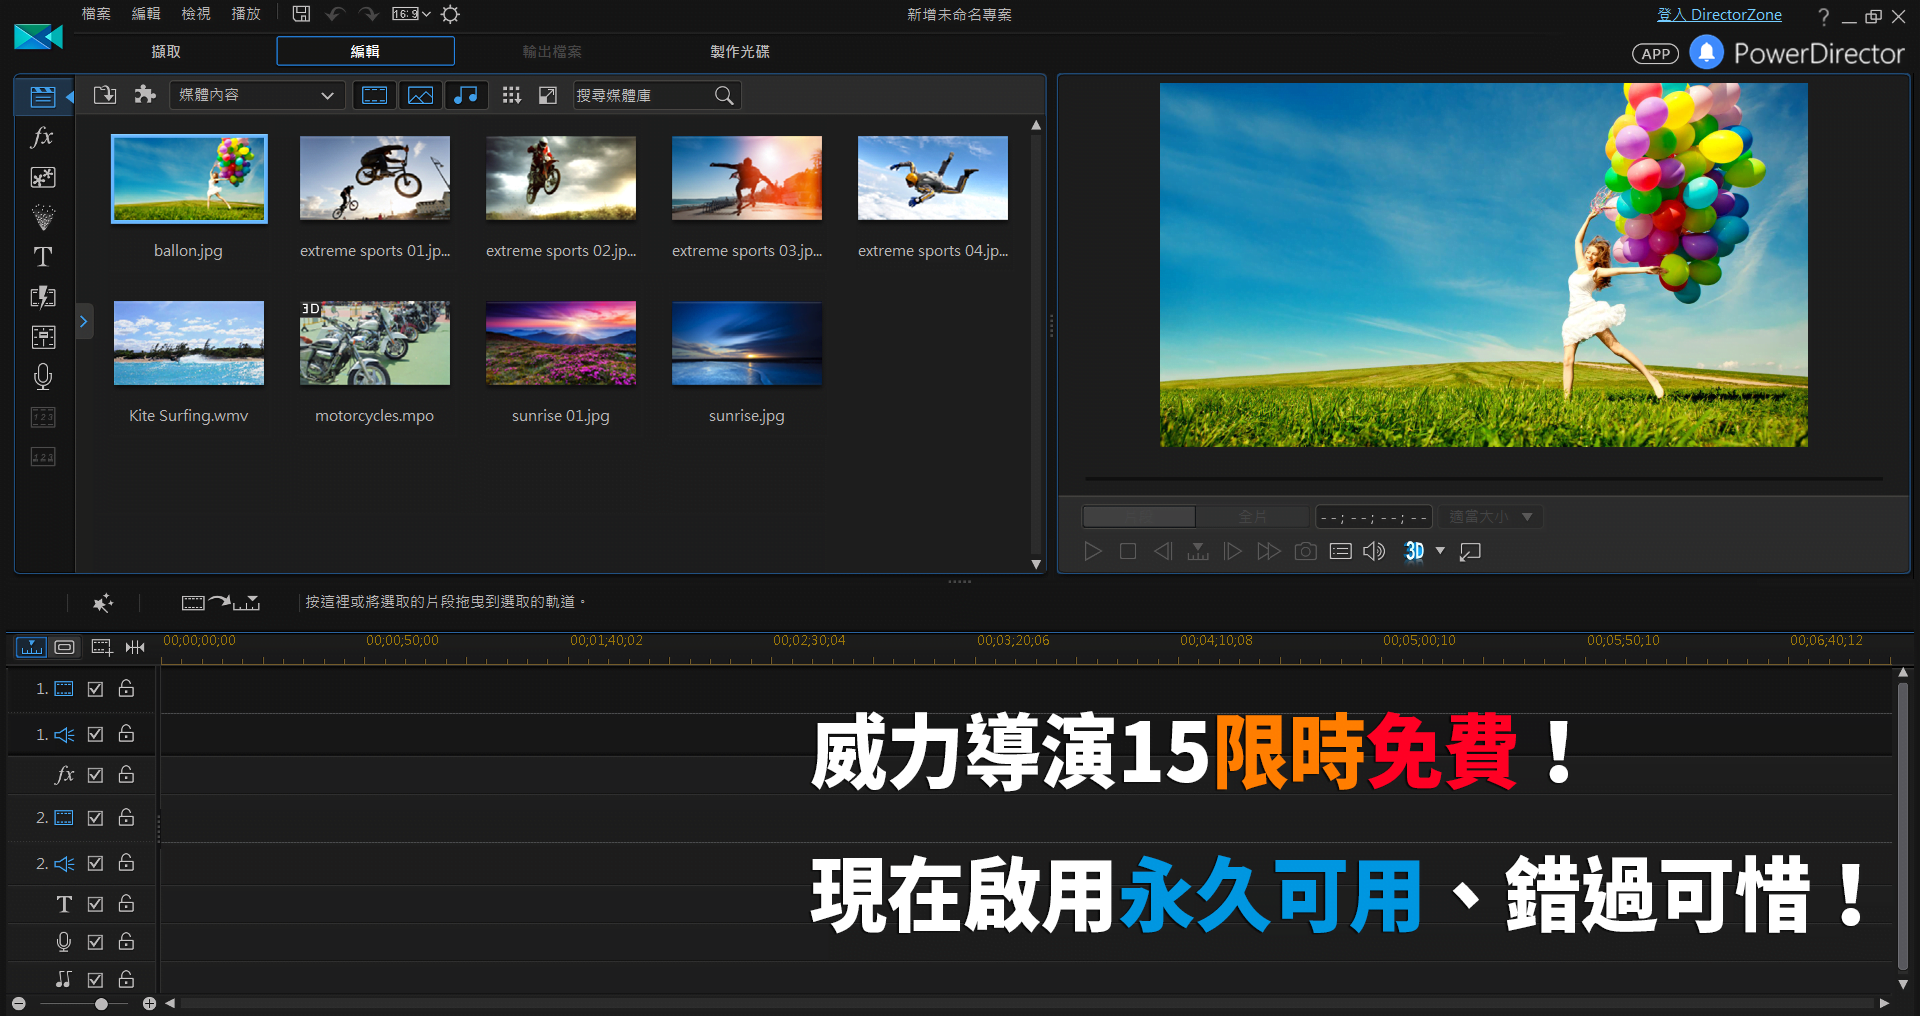 1 - 威力導演 15 LE 繁體中文版「限時免費」下載，啟用後永久可用！